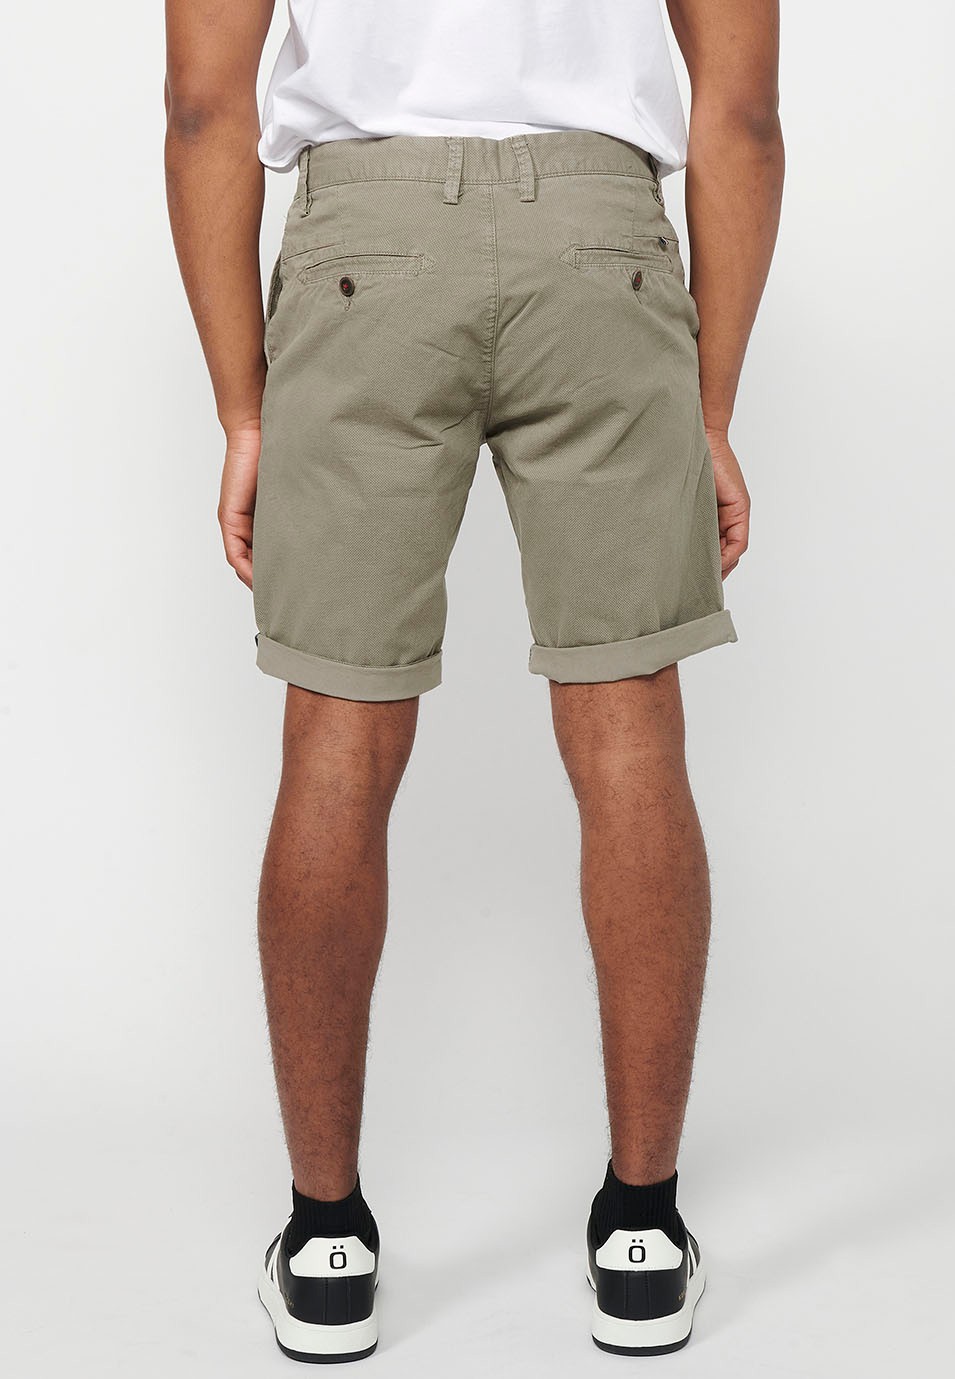 Herren-Bermuda-Chino-Shorts mit Umschlag, Reißverschluss vorne und Knopfverschluss sowie vier Taschen in Nerzfarbe 1